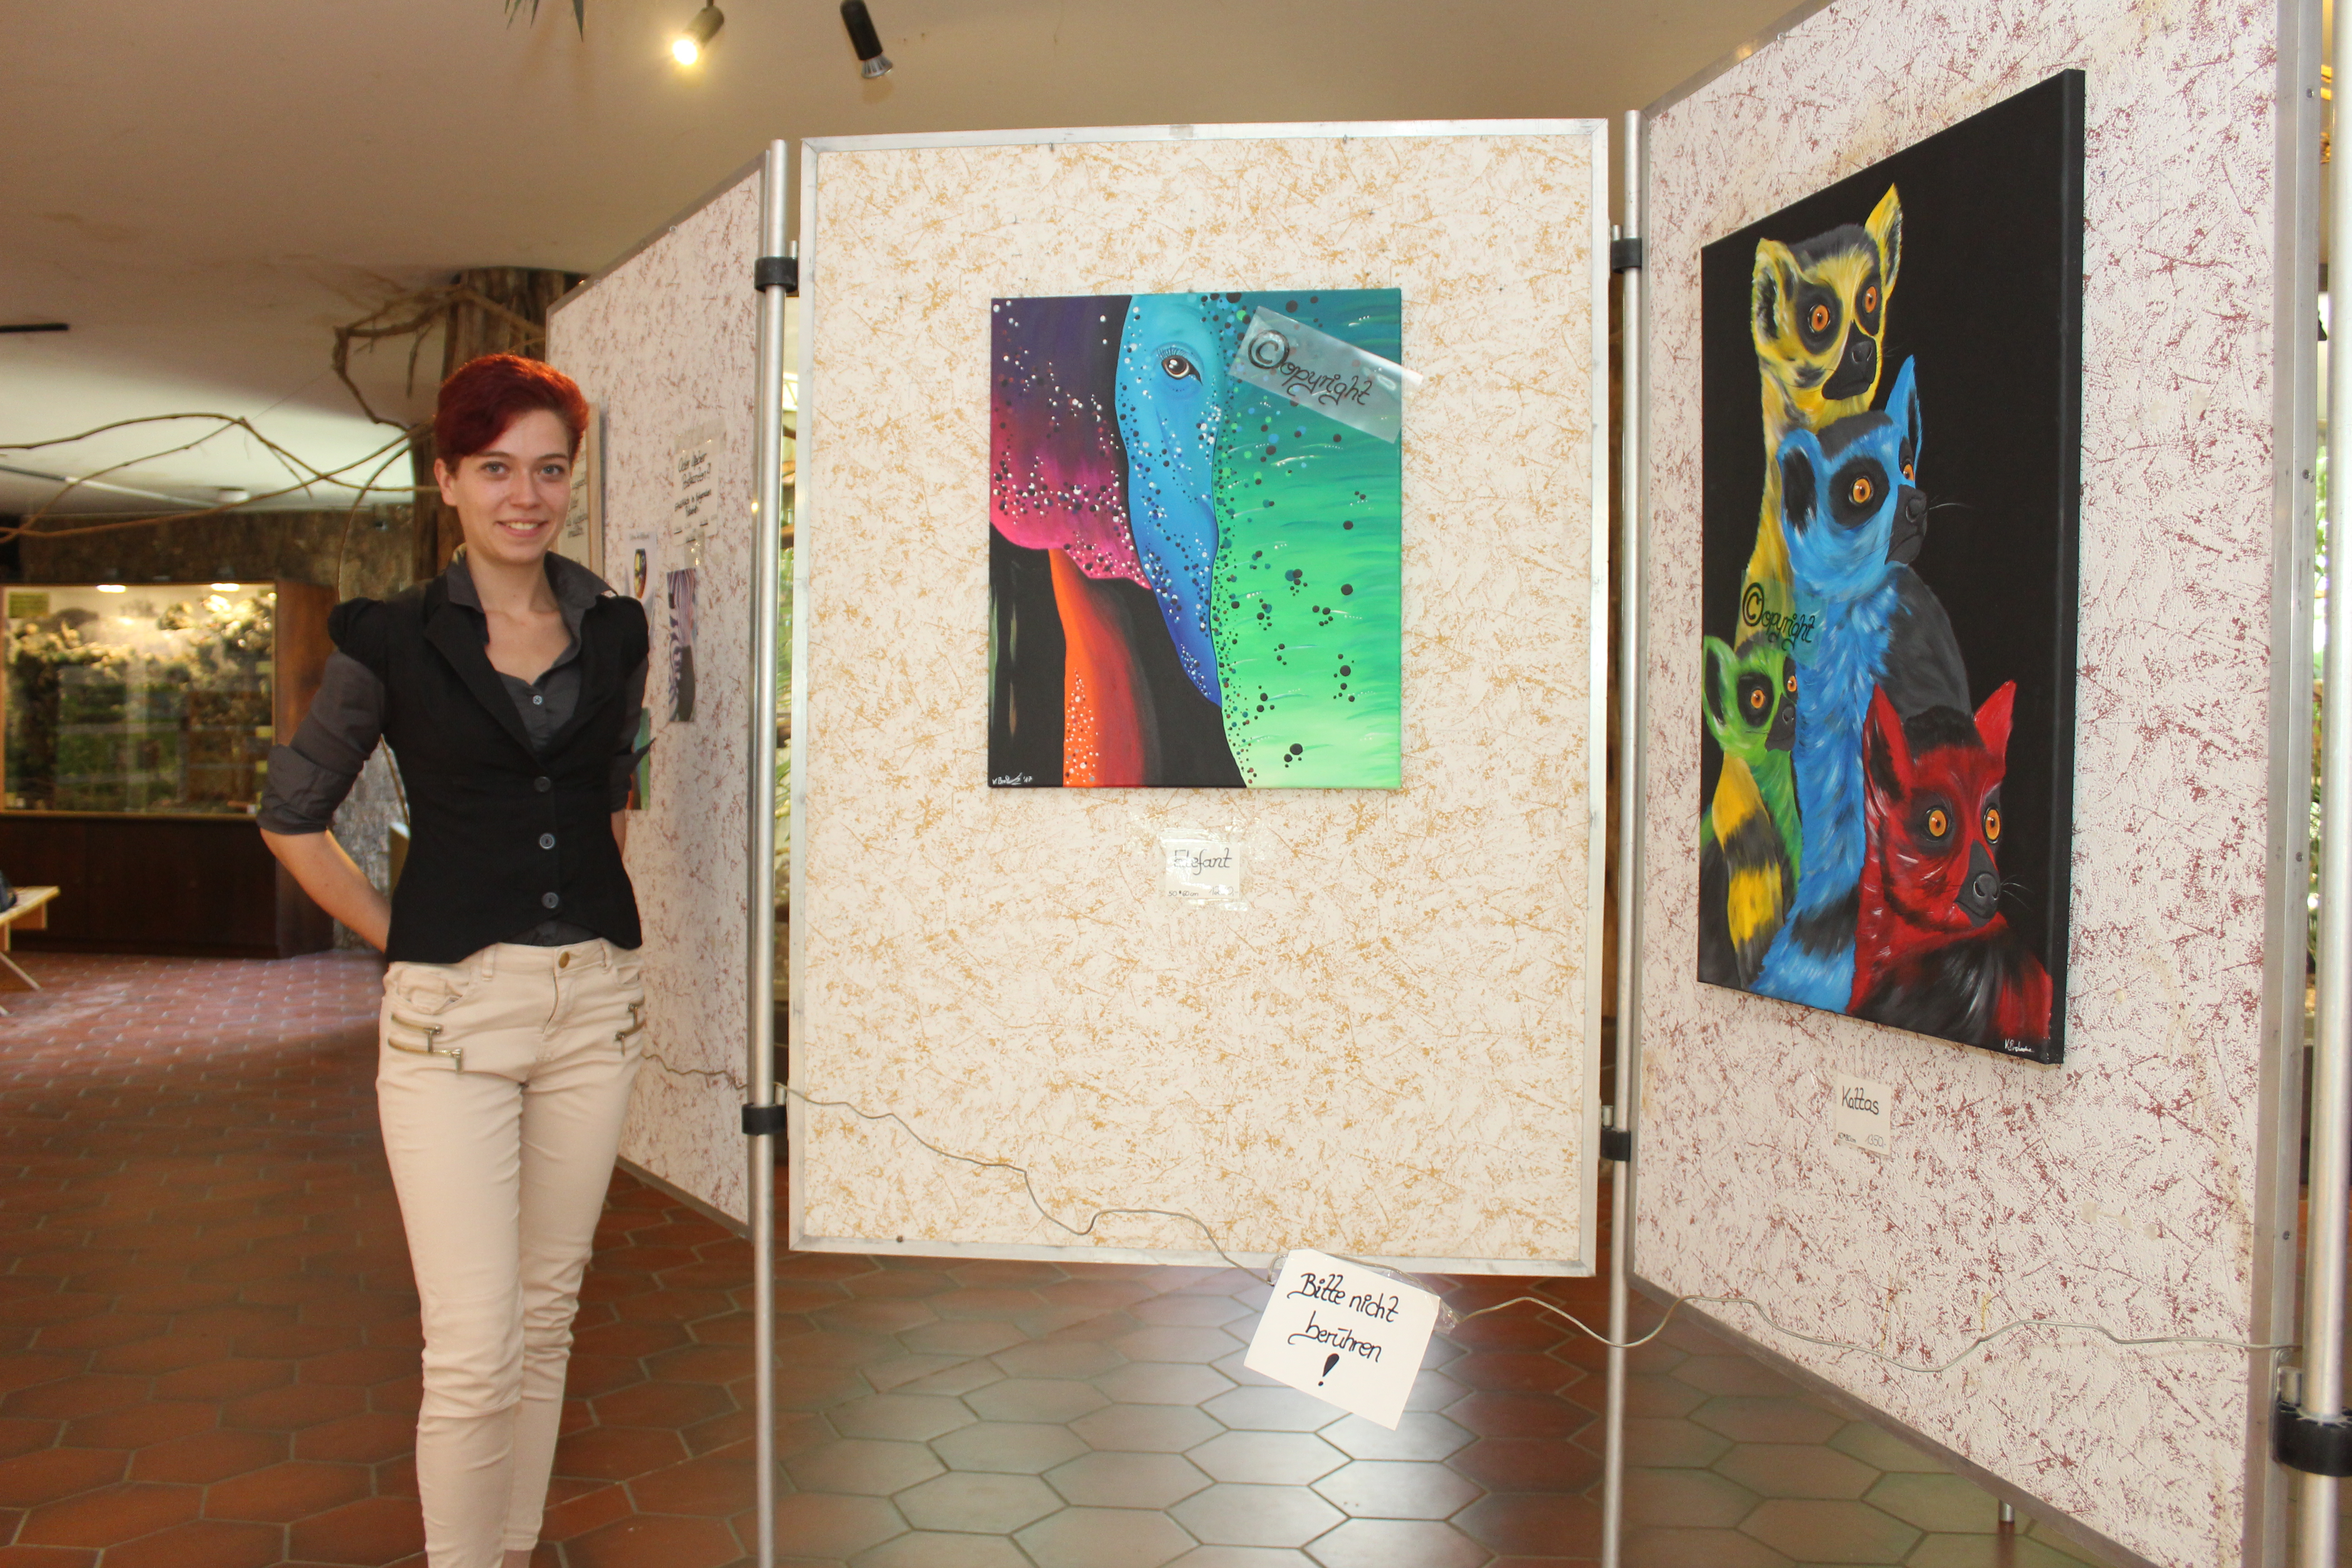 Ausstellung "Colour me different" im Affenhaus